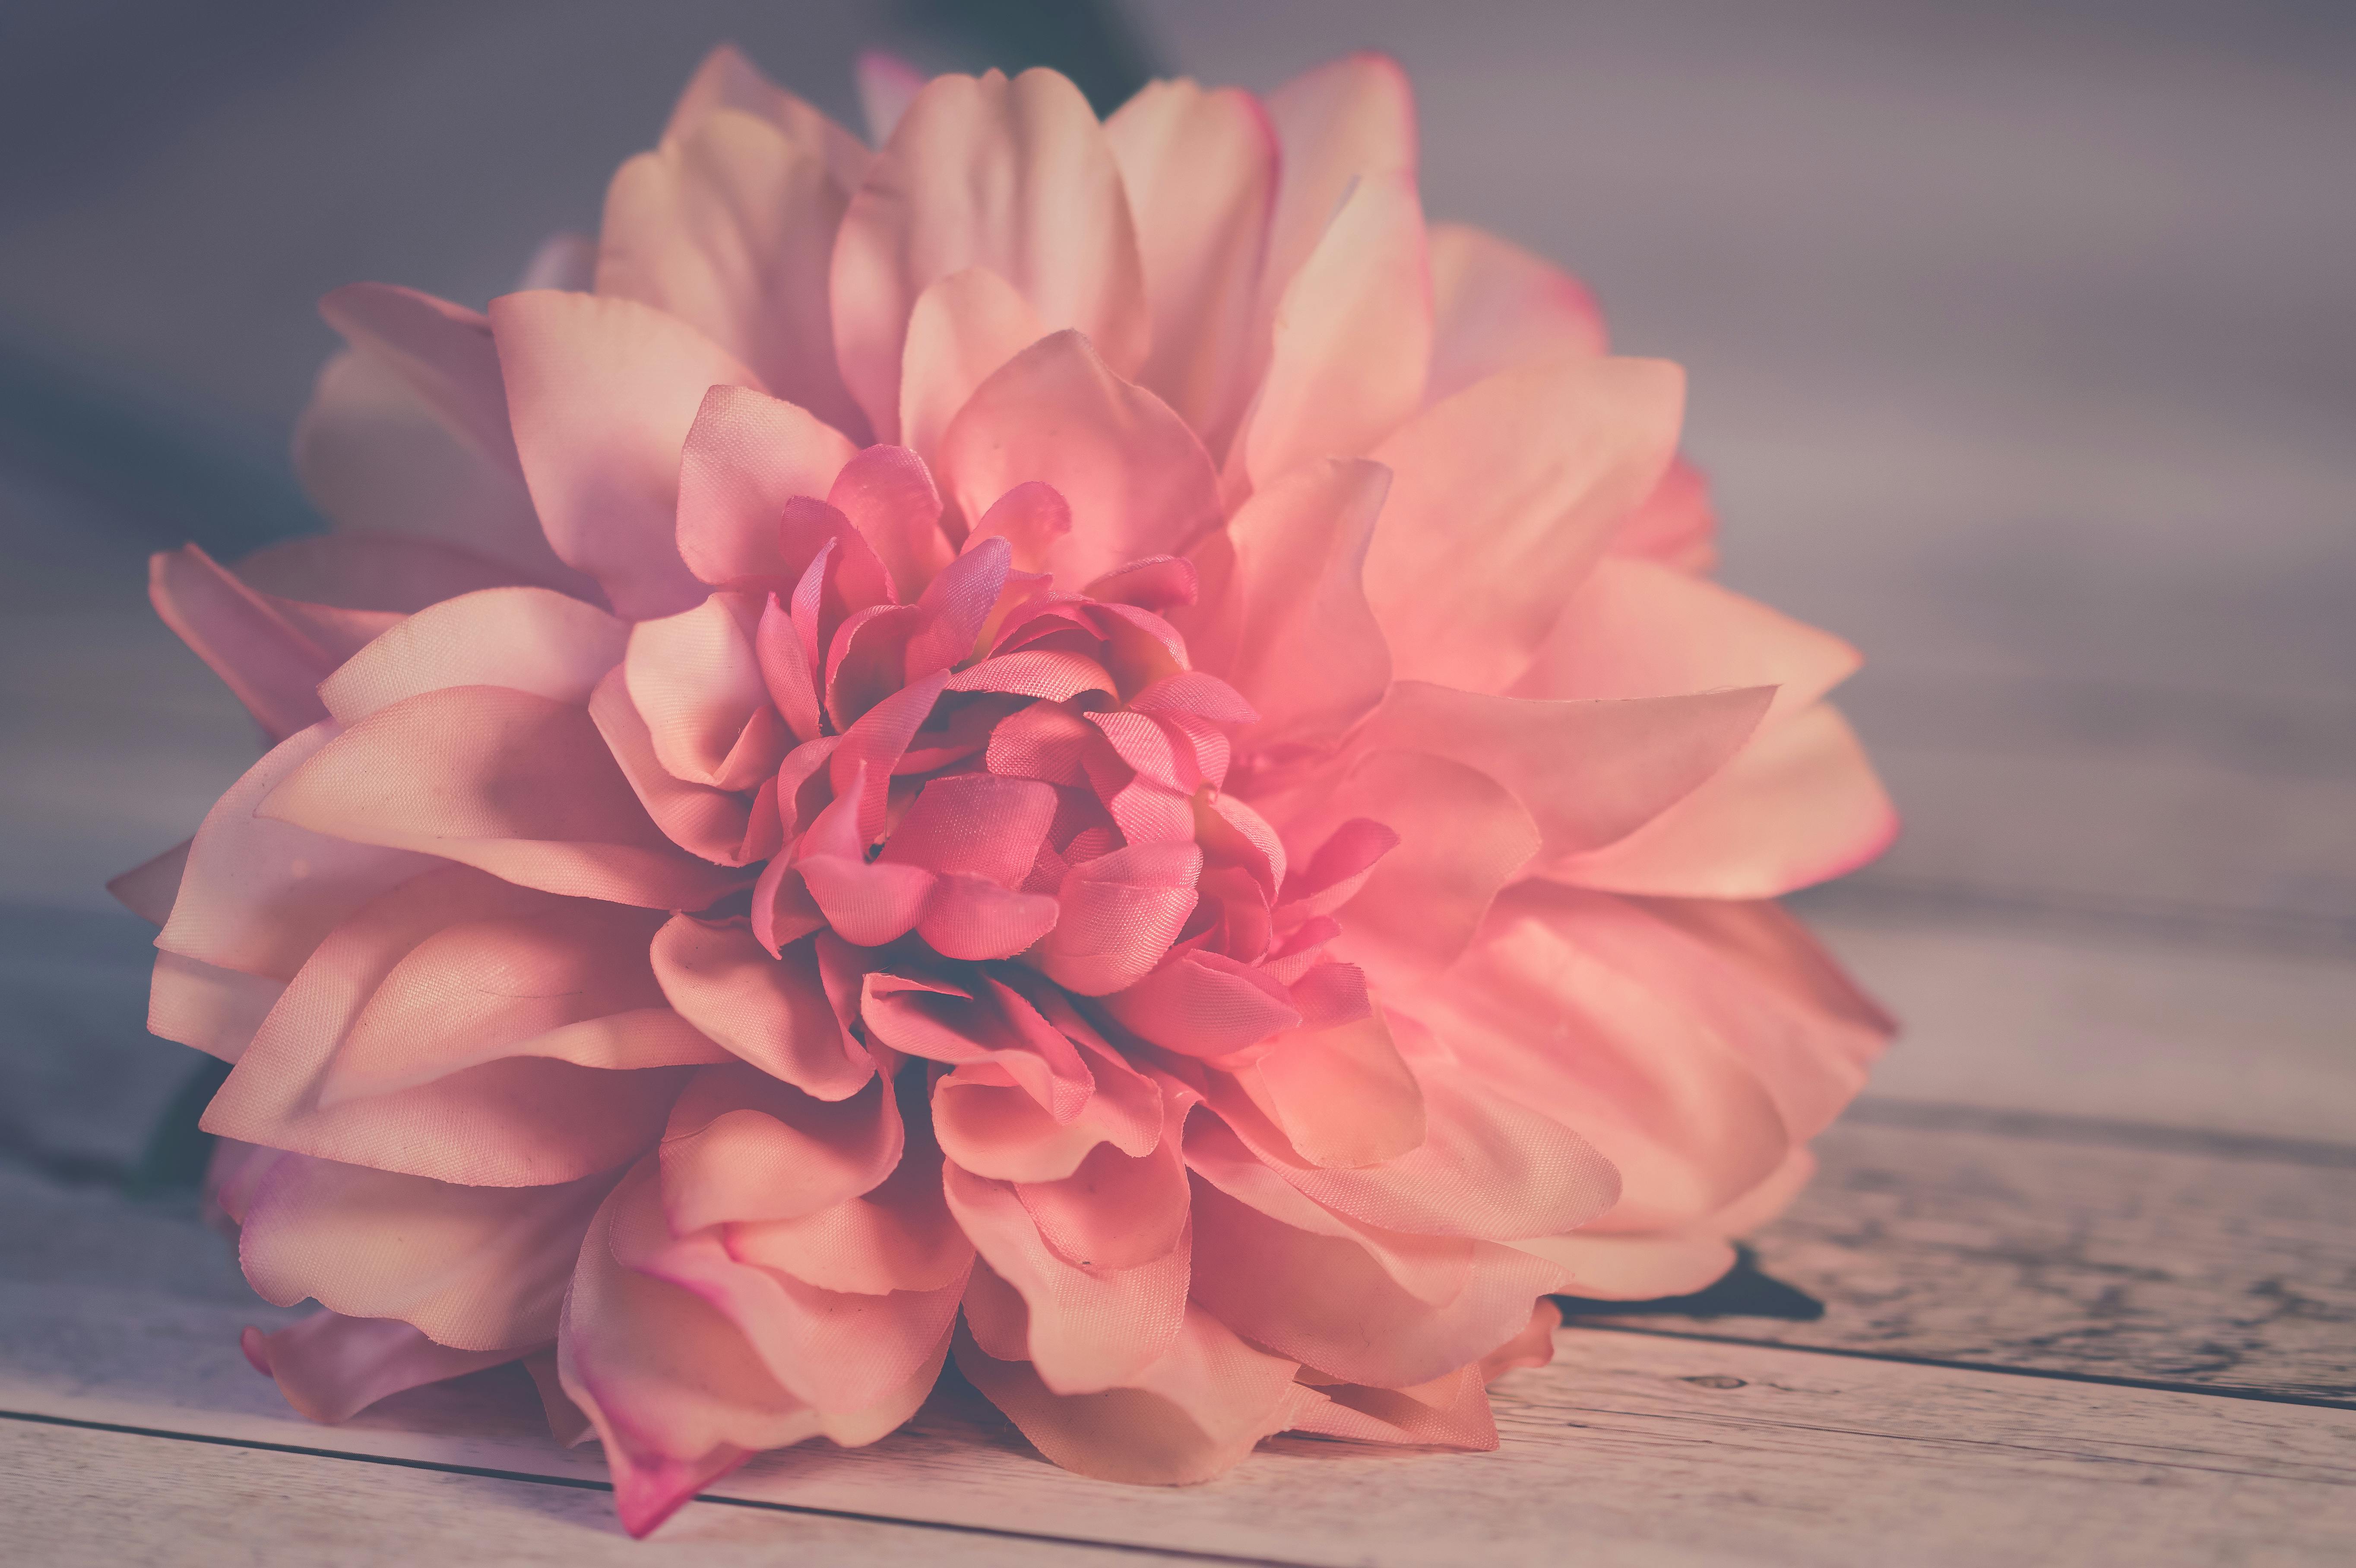 咲くピンクのダリアの花 無料の写真素材